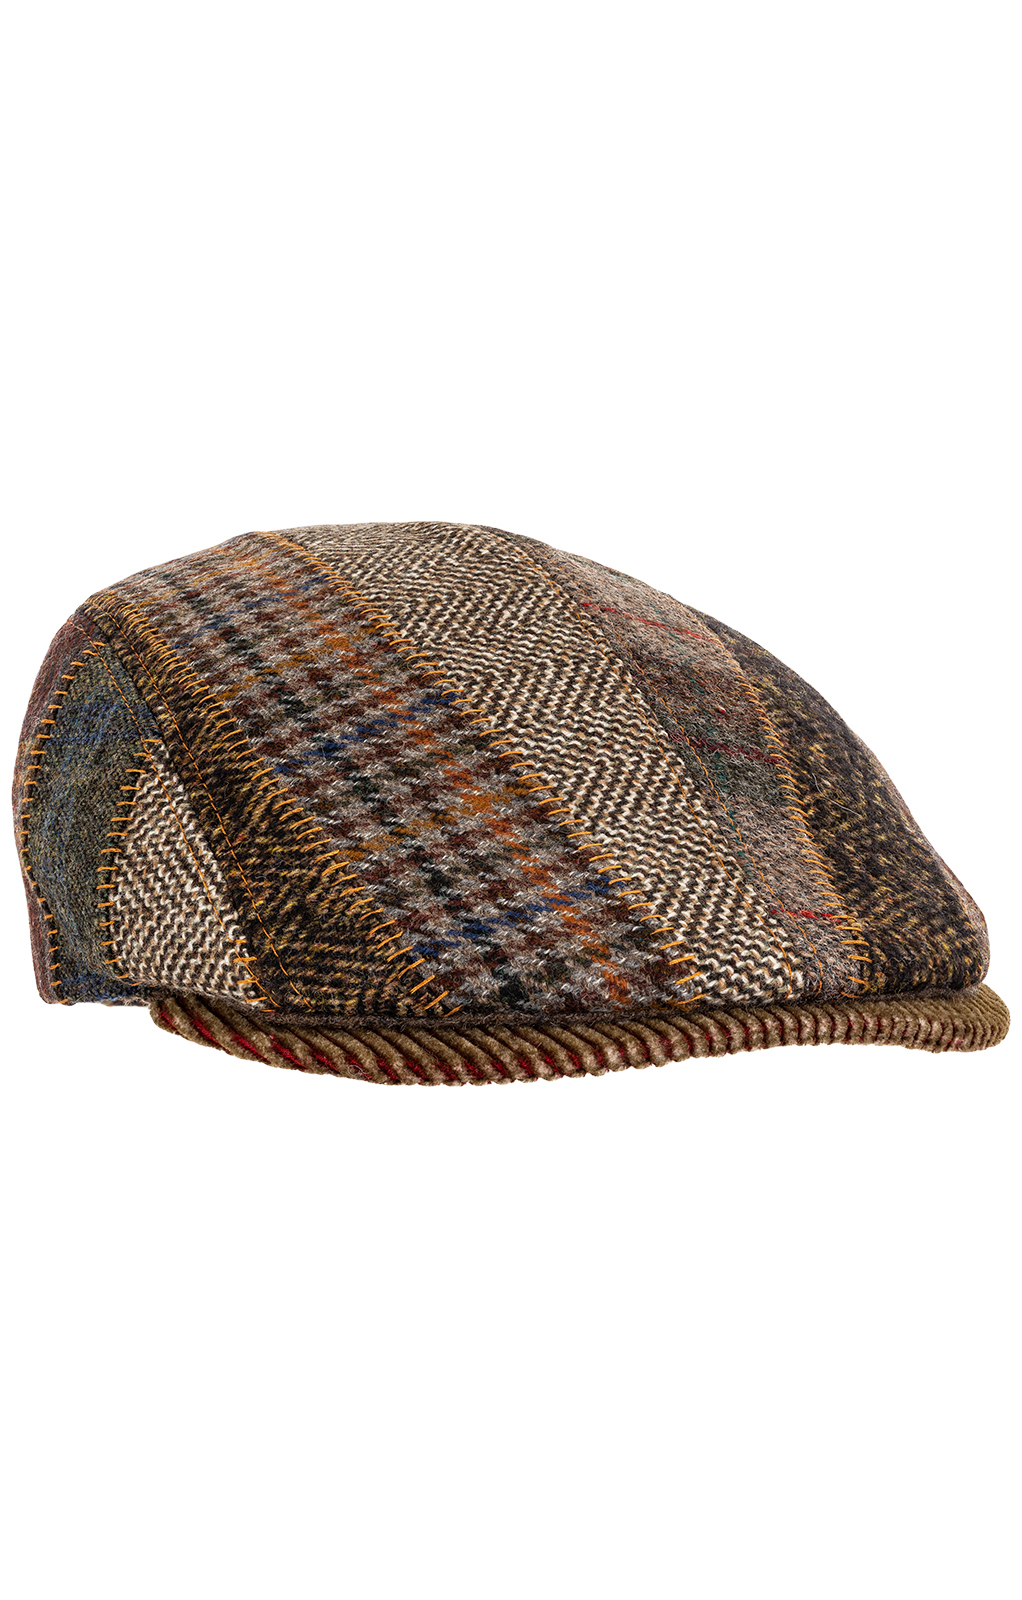 Tiroler hoed 54001 patch bruin von Faustmann